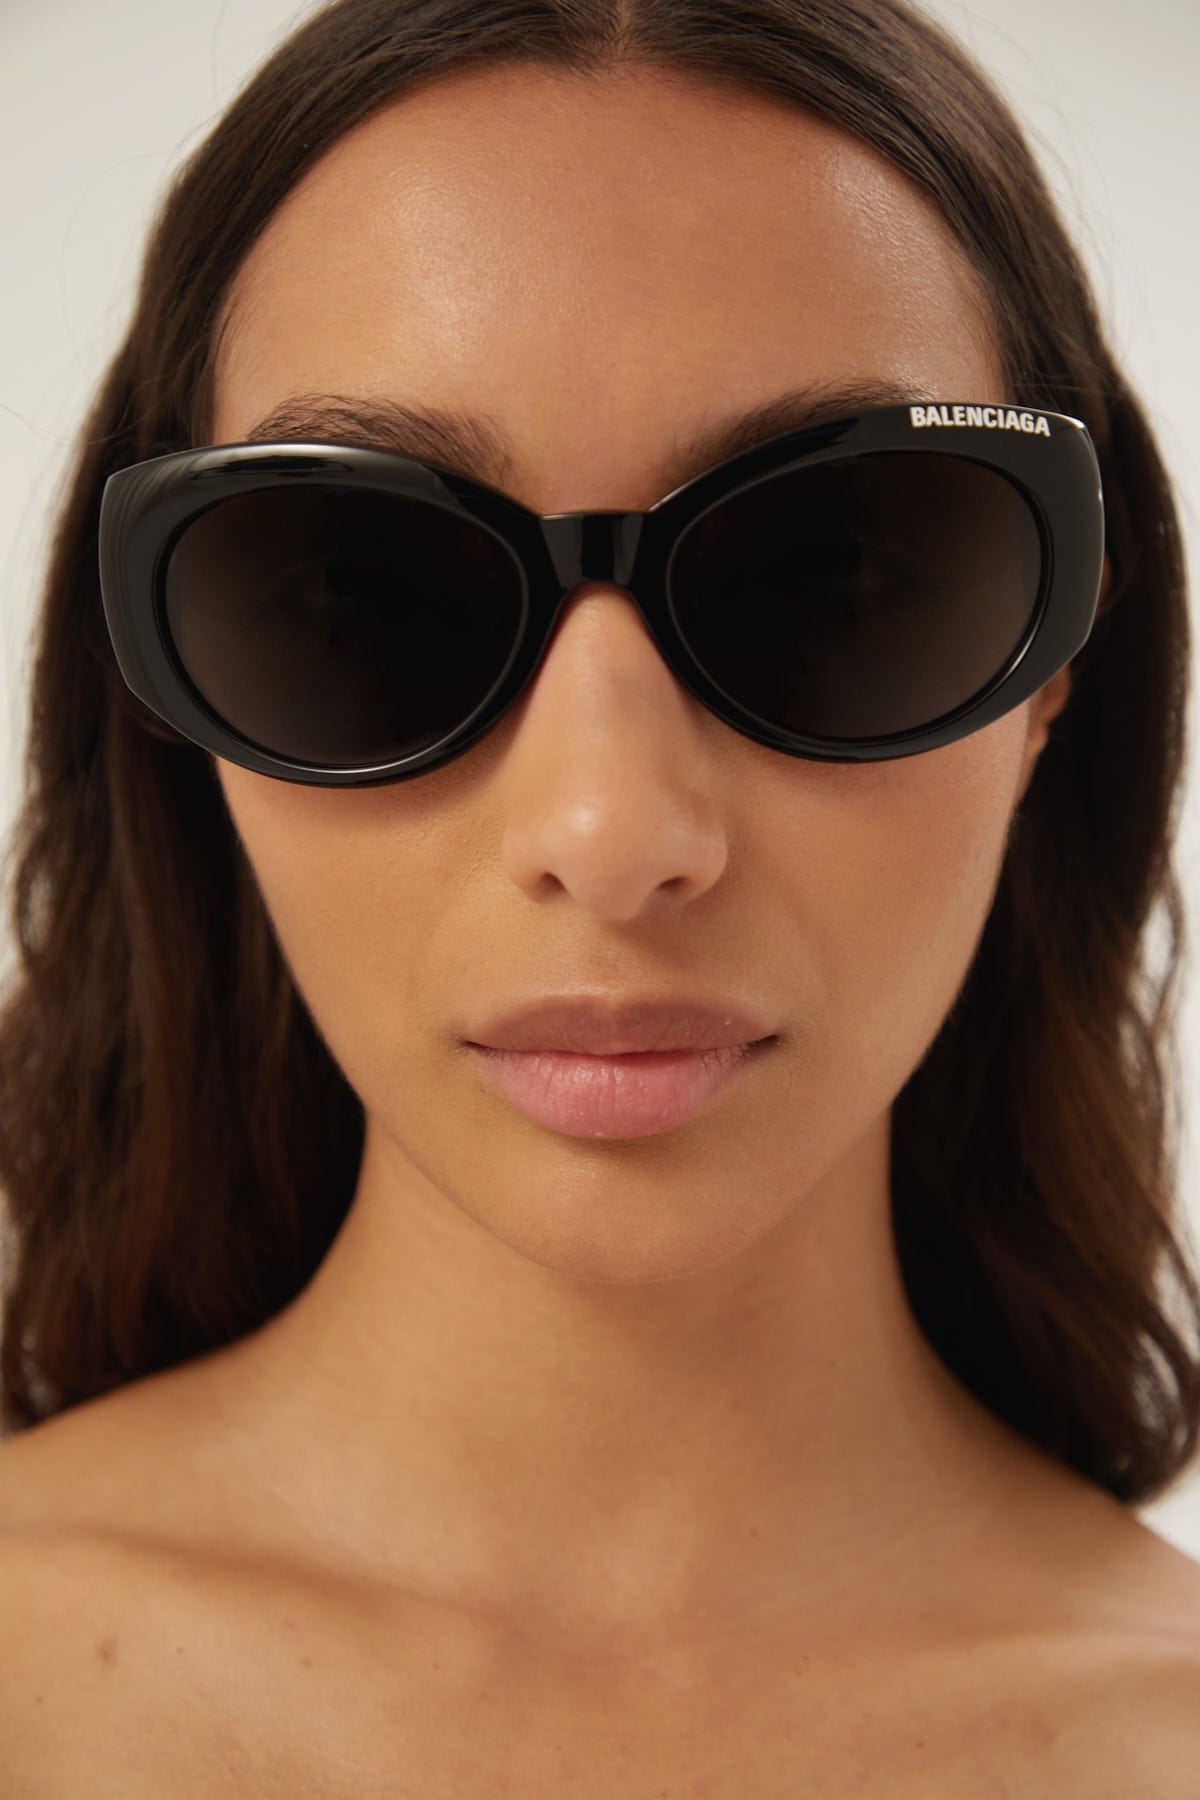 Balenciaga black oval sunglasses - Eyewear Club